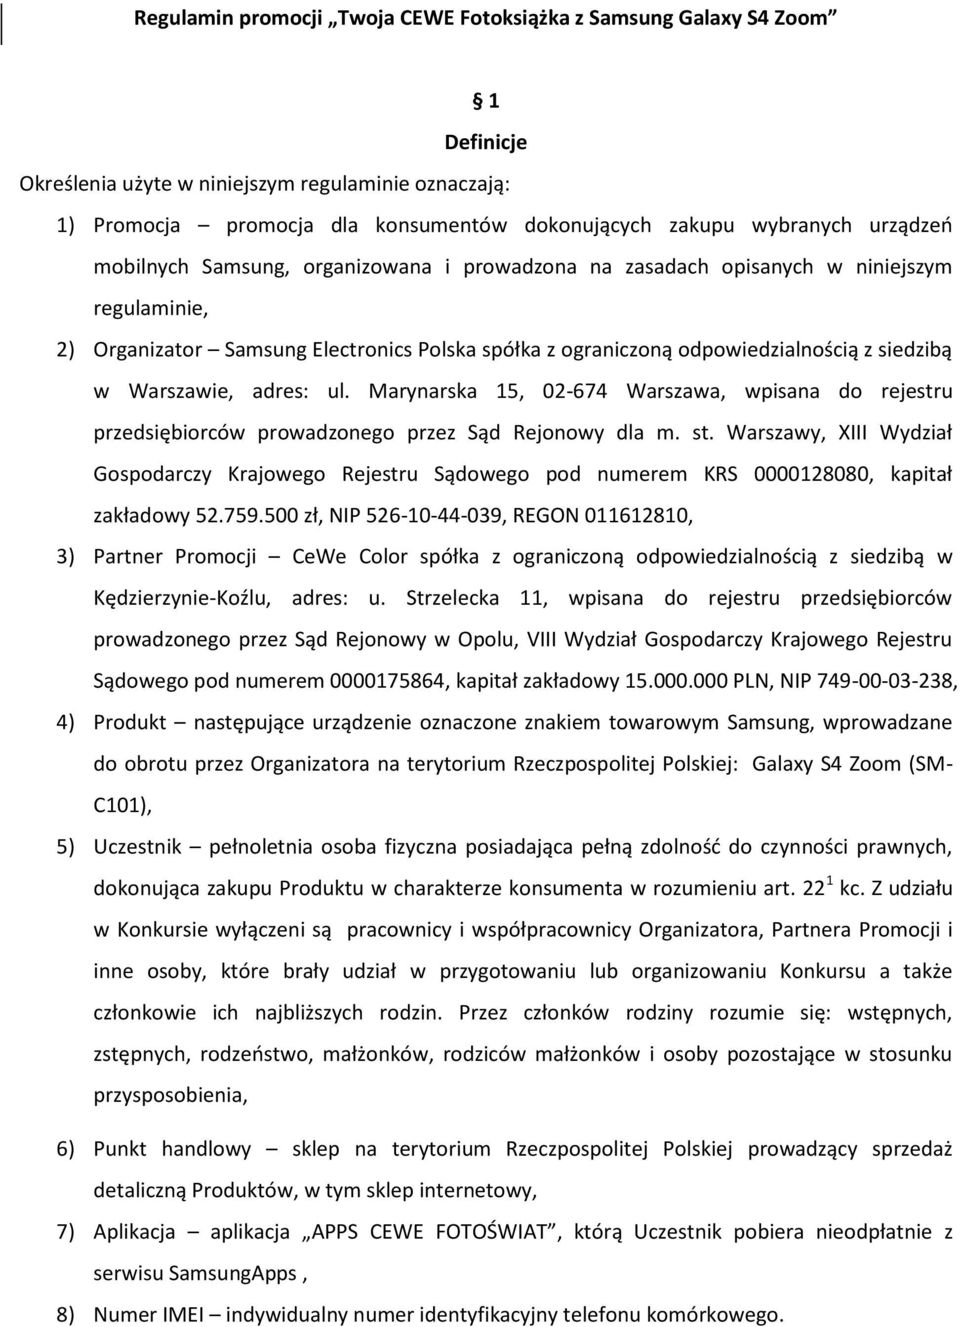 Warszawie, adres: ul. Marynarska 15, 02-674, wpisana do rejestru przedsiębiorców prowadzonego przez Sąd Rejonowy dla m. st.